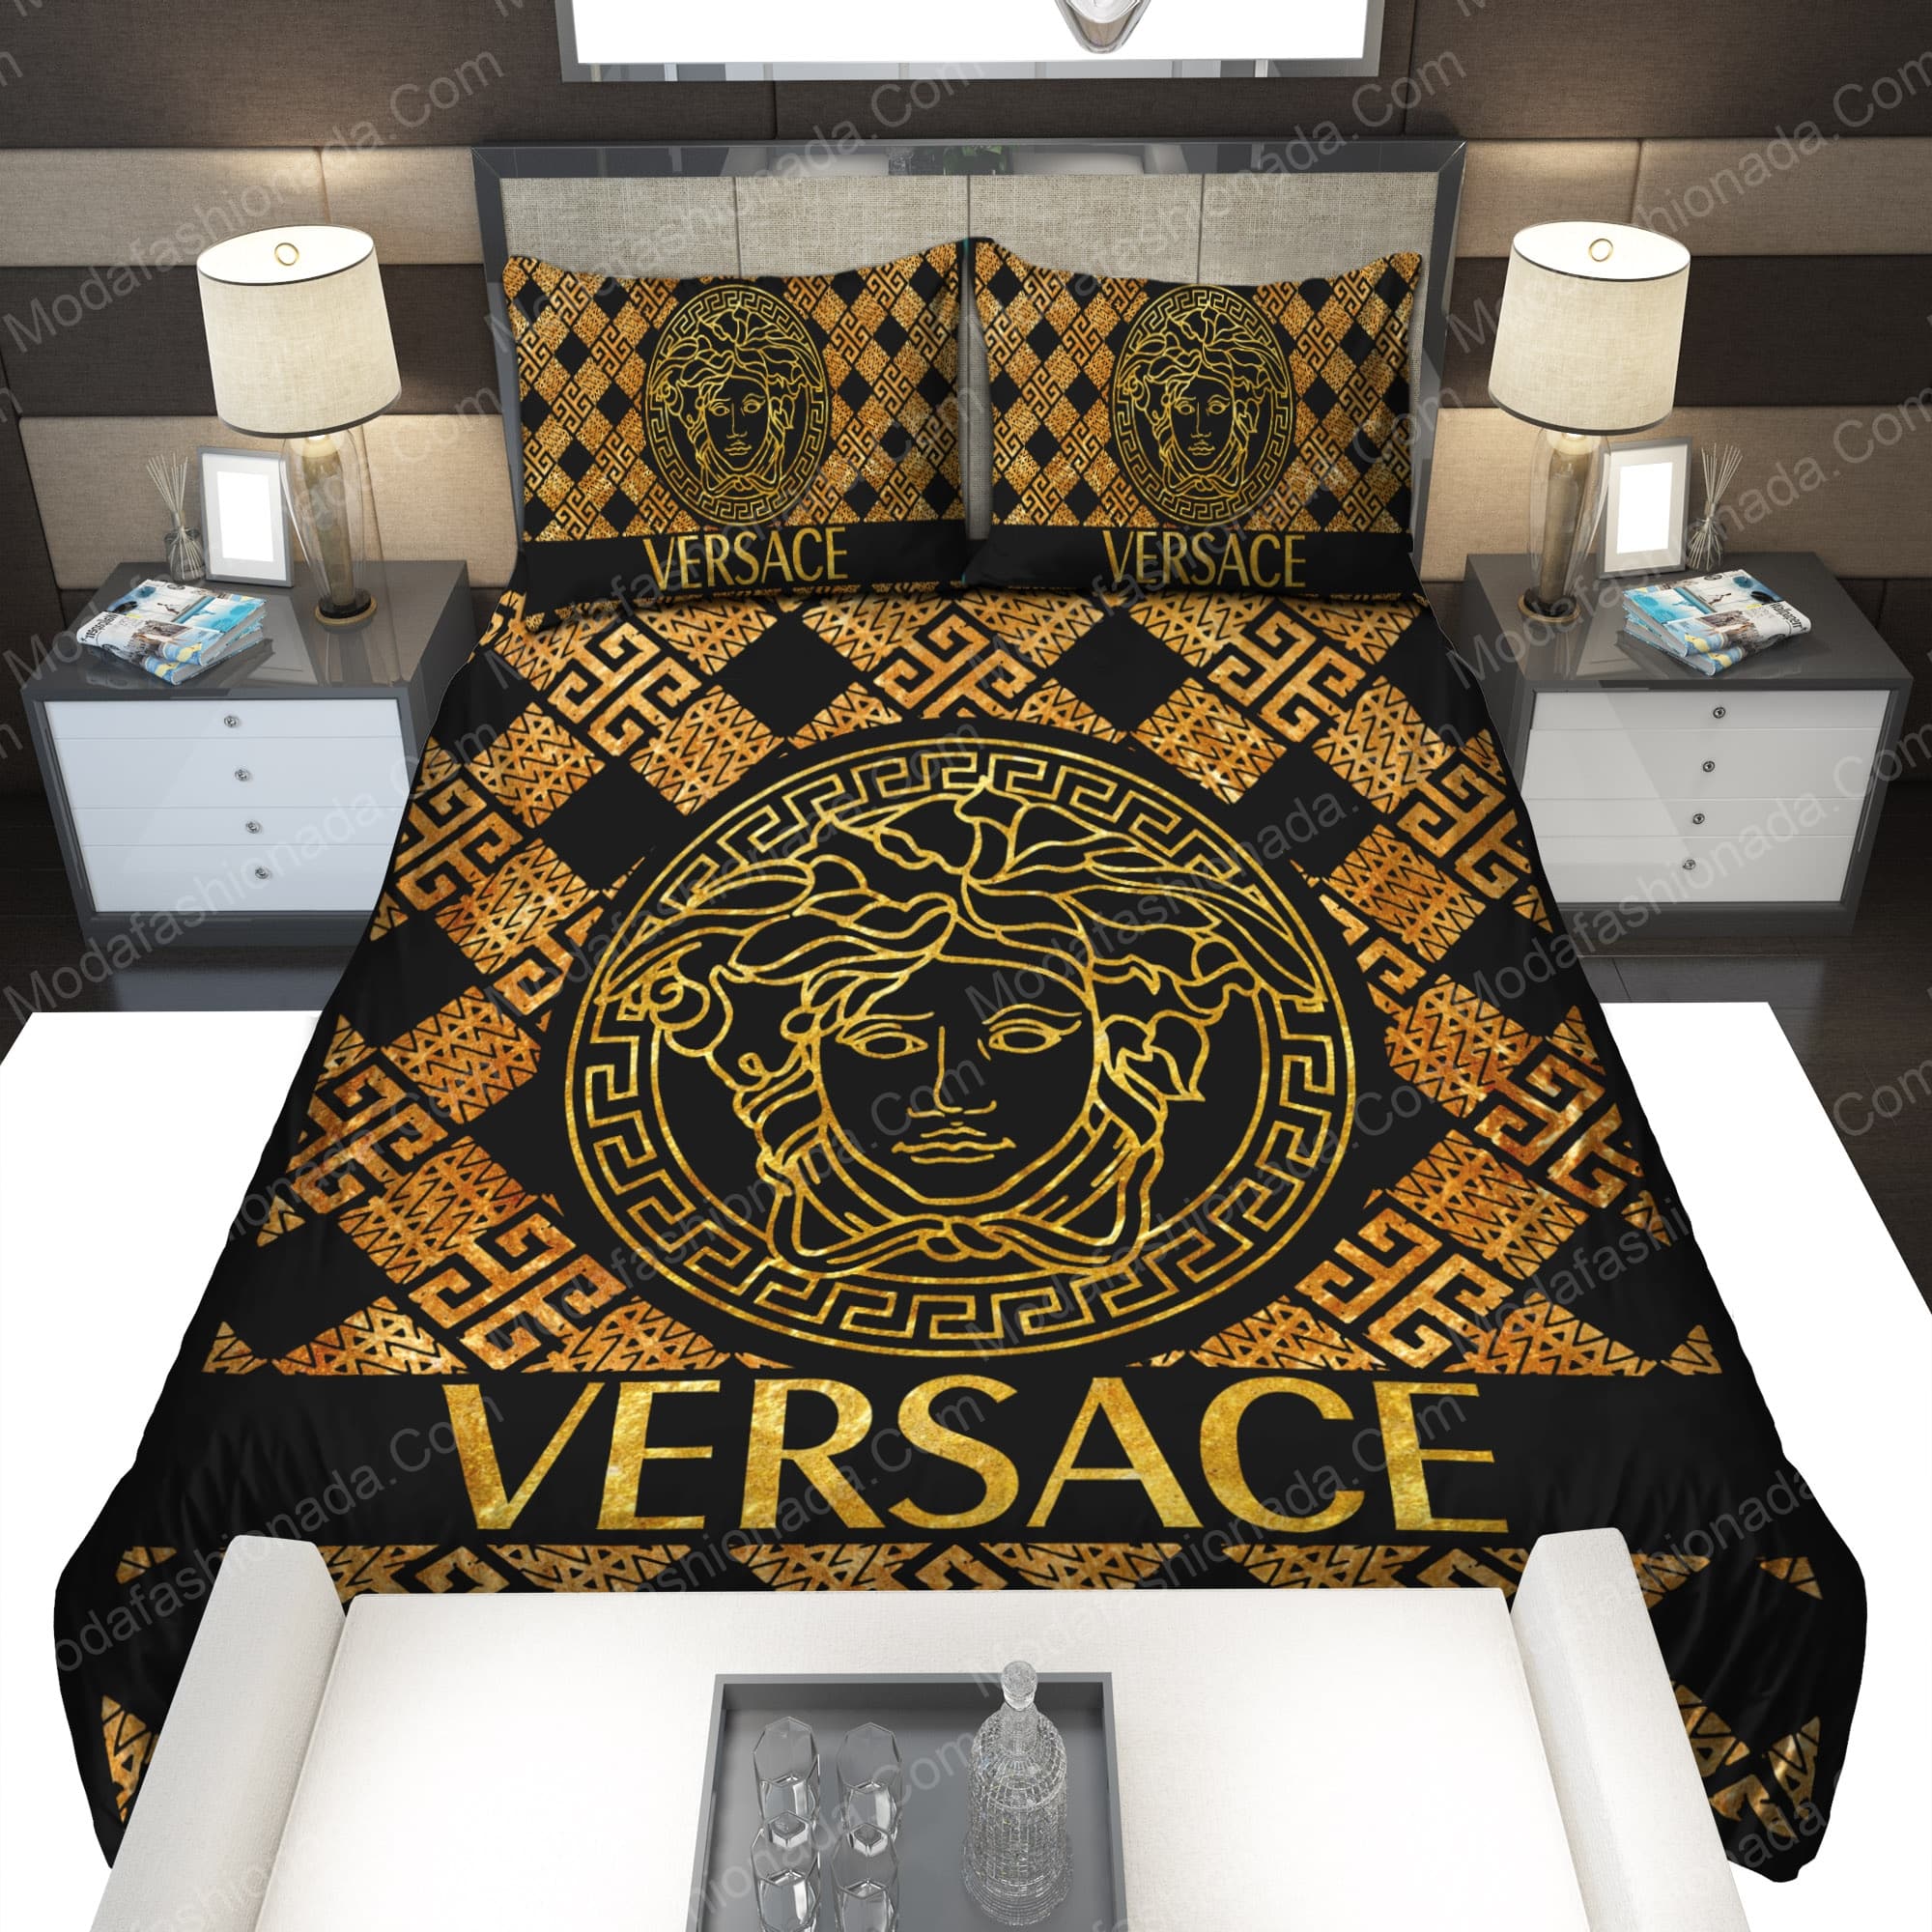 Versace Bedding Sets - Behindgift